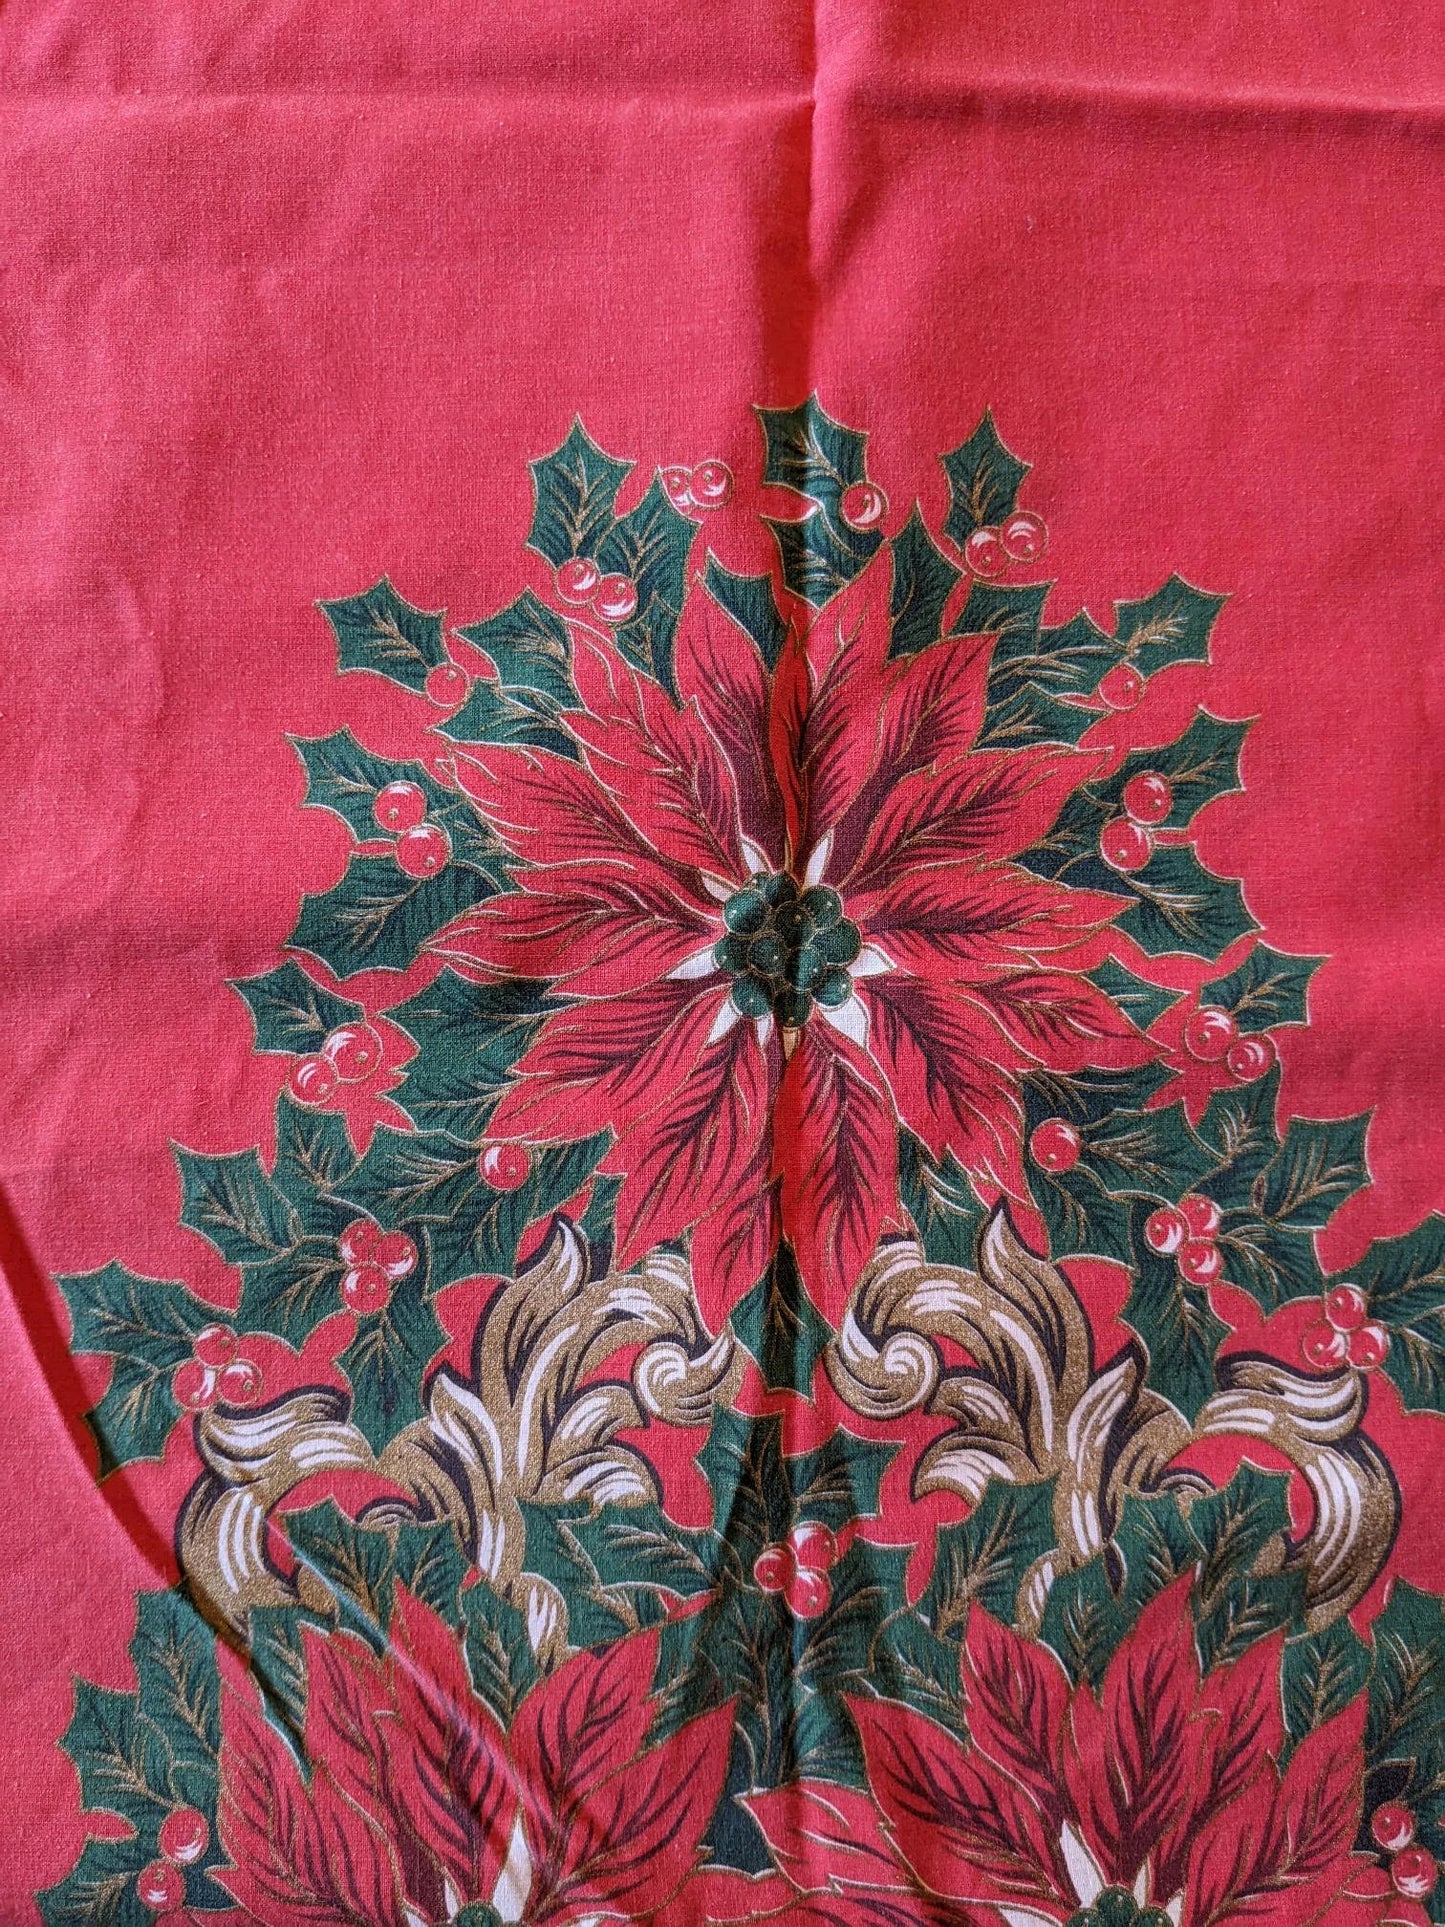 1970's Christmas Holly & Poinsettias Tablecloth